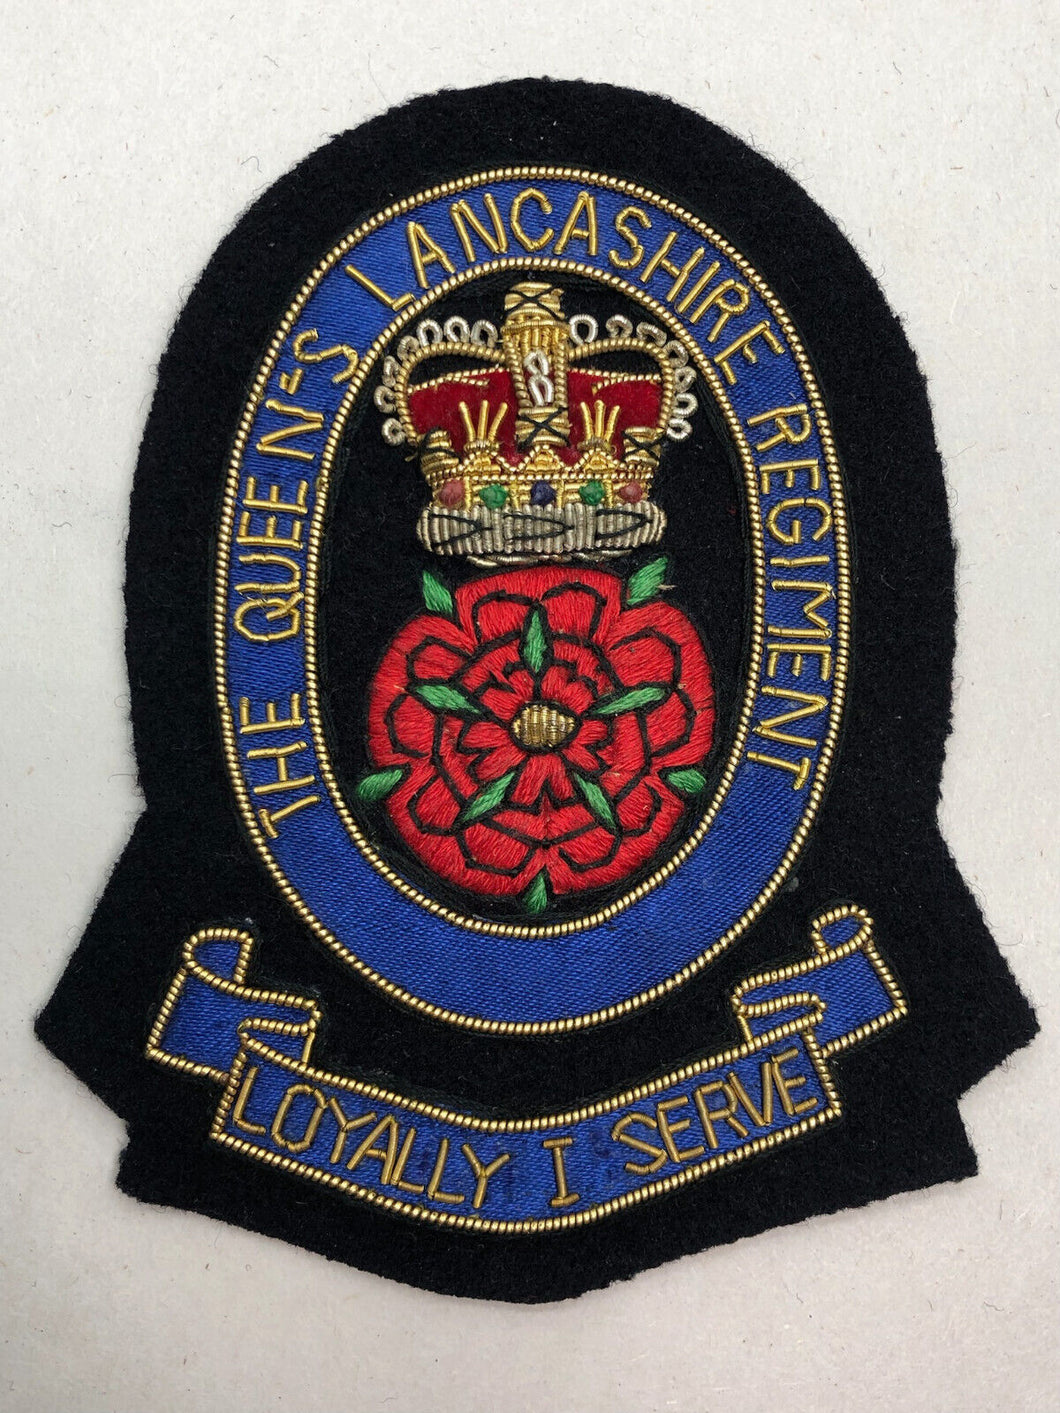 British Army Bullion Embroidered Blazer Badge - The Queen's Lancashire Regiment